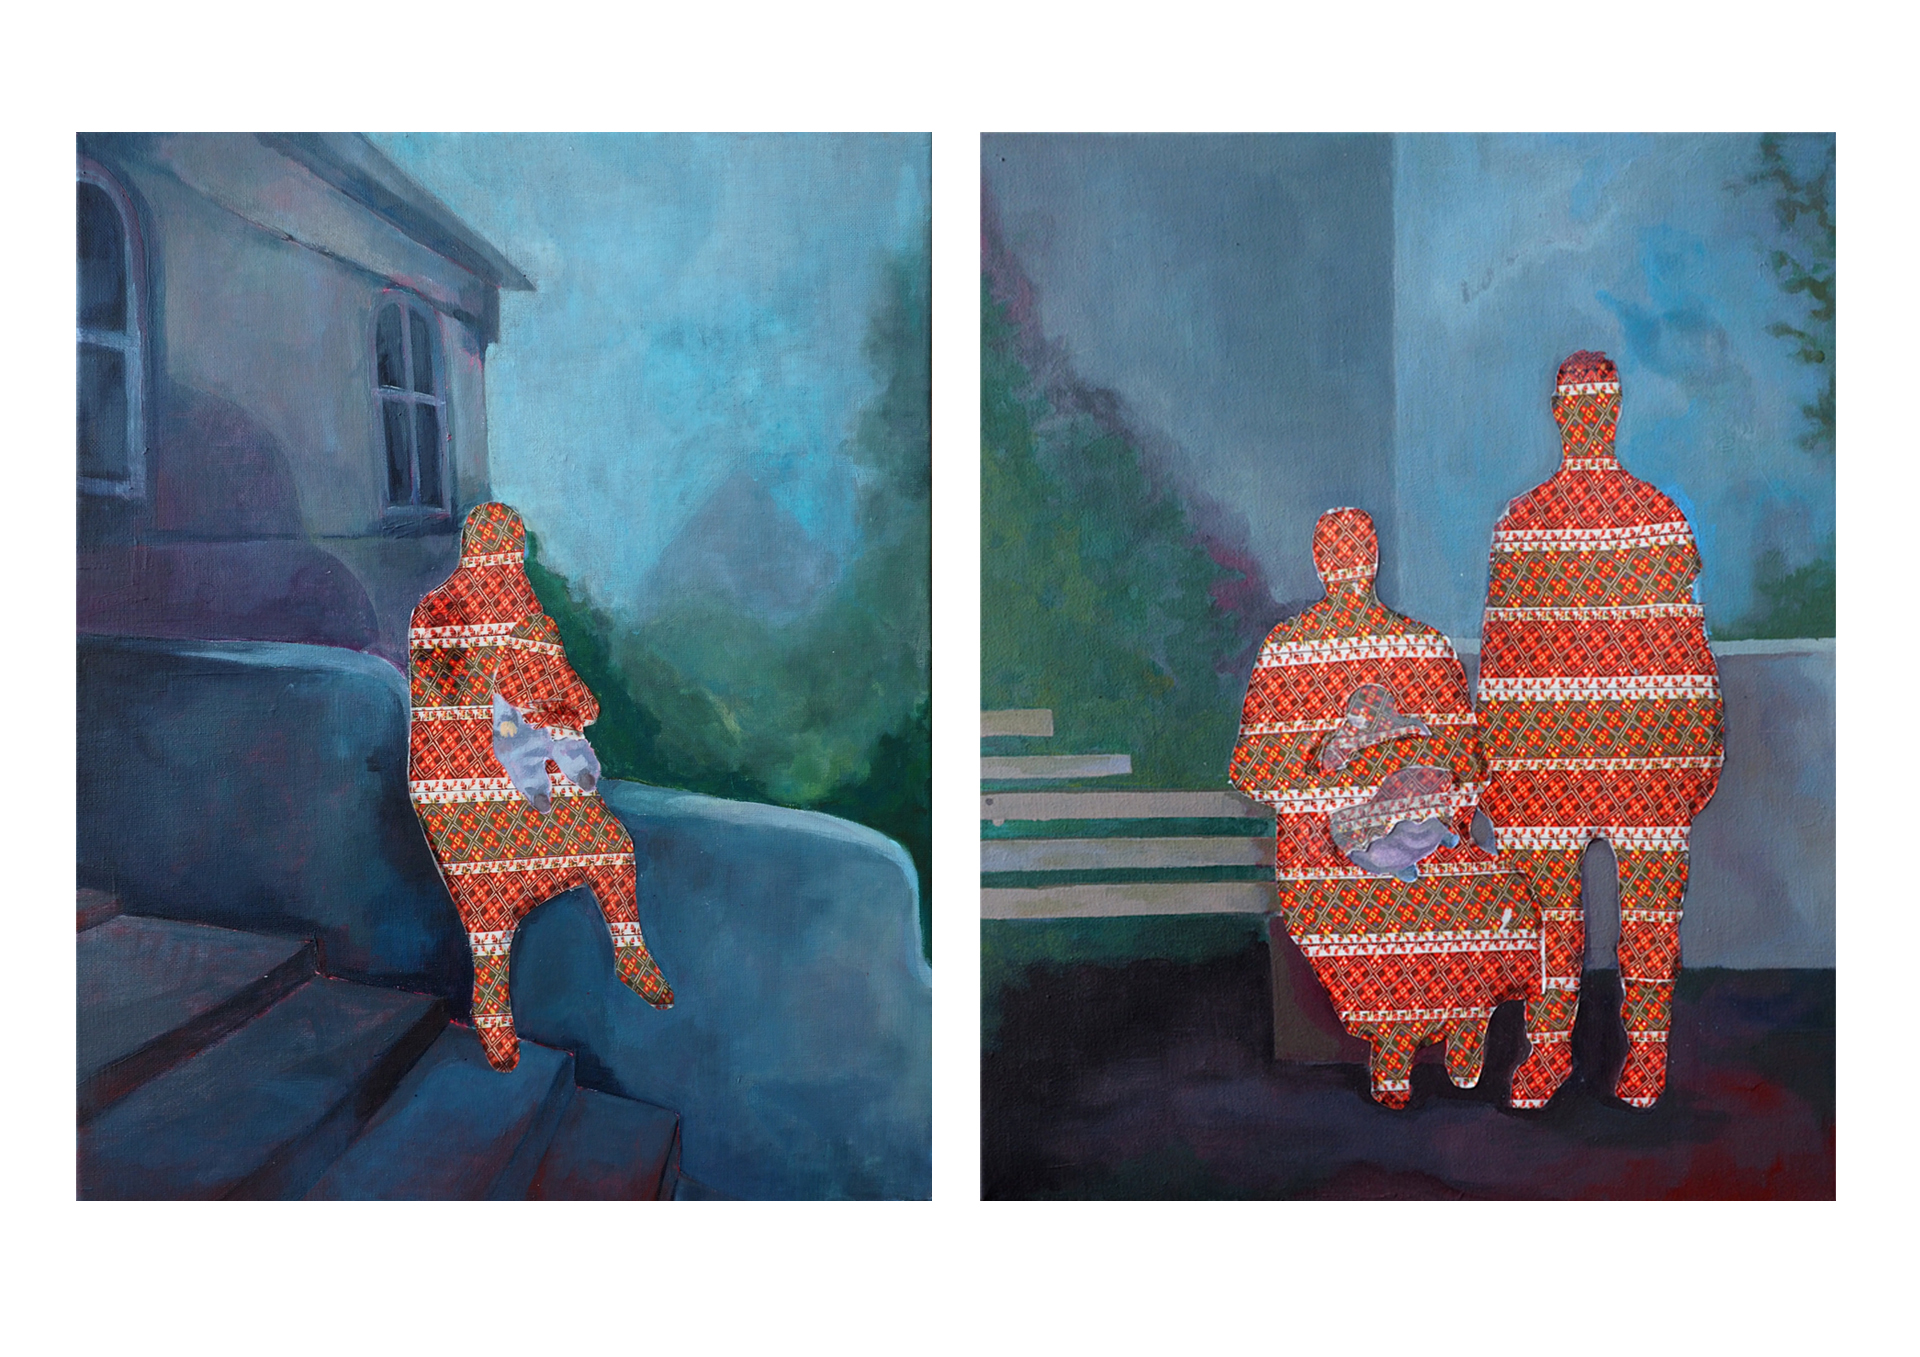 Oba obrazy są utrzymane w niebiesko-fioletowych barwach. W obrazie po lewej stronie są schody i murek. Na murku siedzi kobieta z dzieckiem. Kobieta i dziecko są pokryte pomarańczowo-zielonym wzorem. Za kobietą widać budynek i zielone drzewo. Drugi obraz przedstawia portret małżeństwa. Kobieta trzyma na rękach dziecko. Małżeństwo jest pokryte wzorem. Za postaciami jest zielone drzewo i murek.